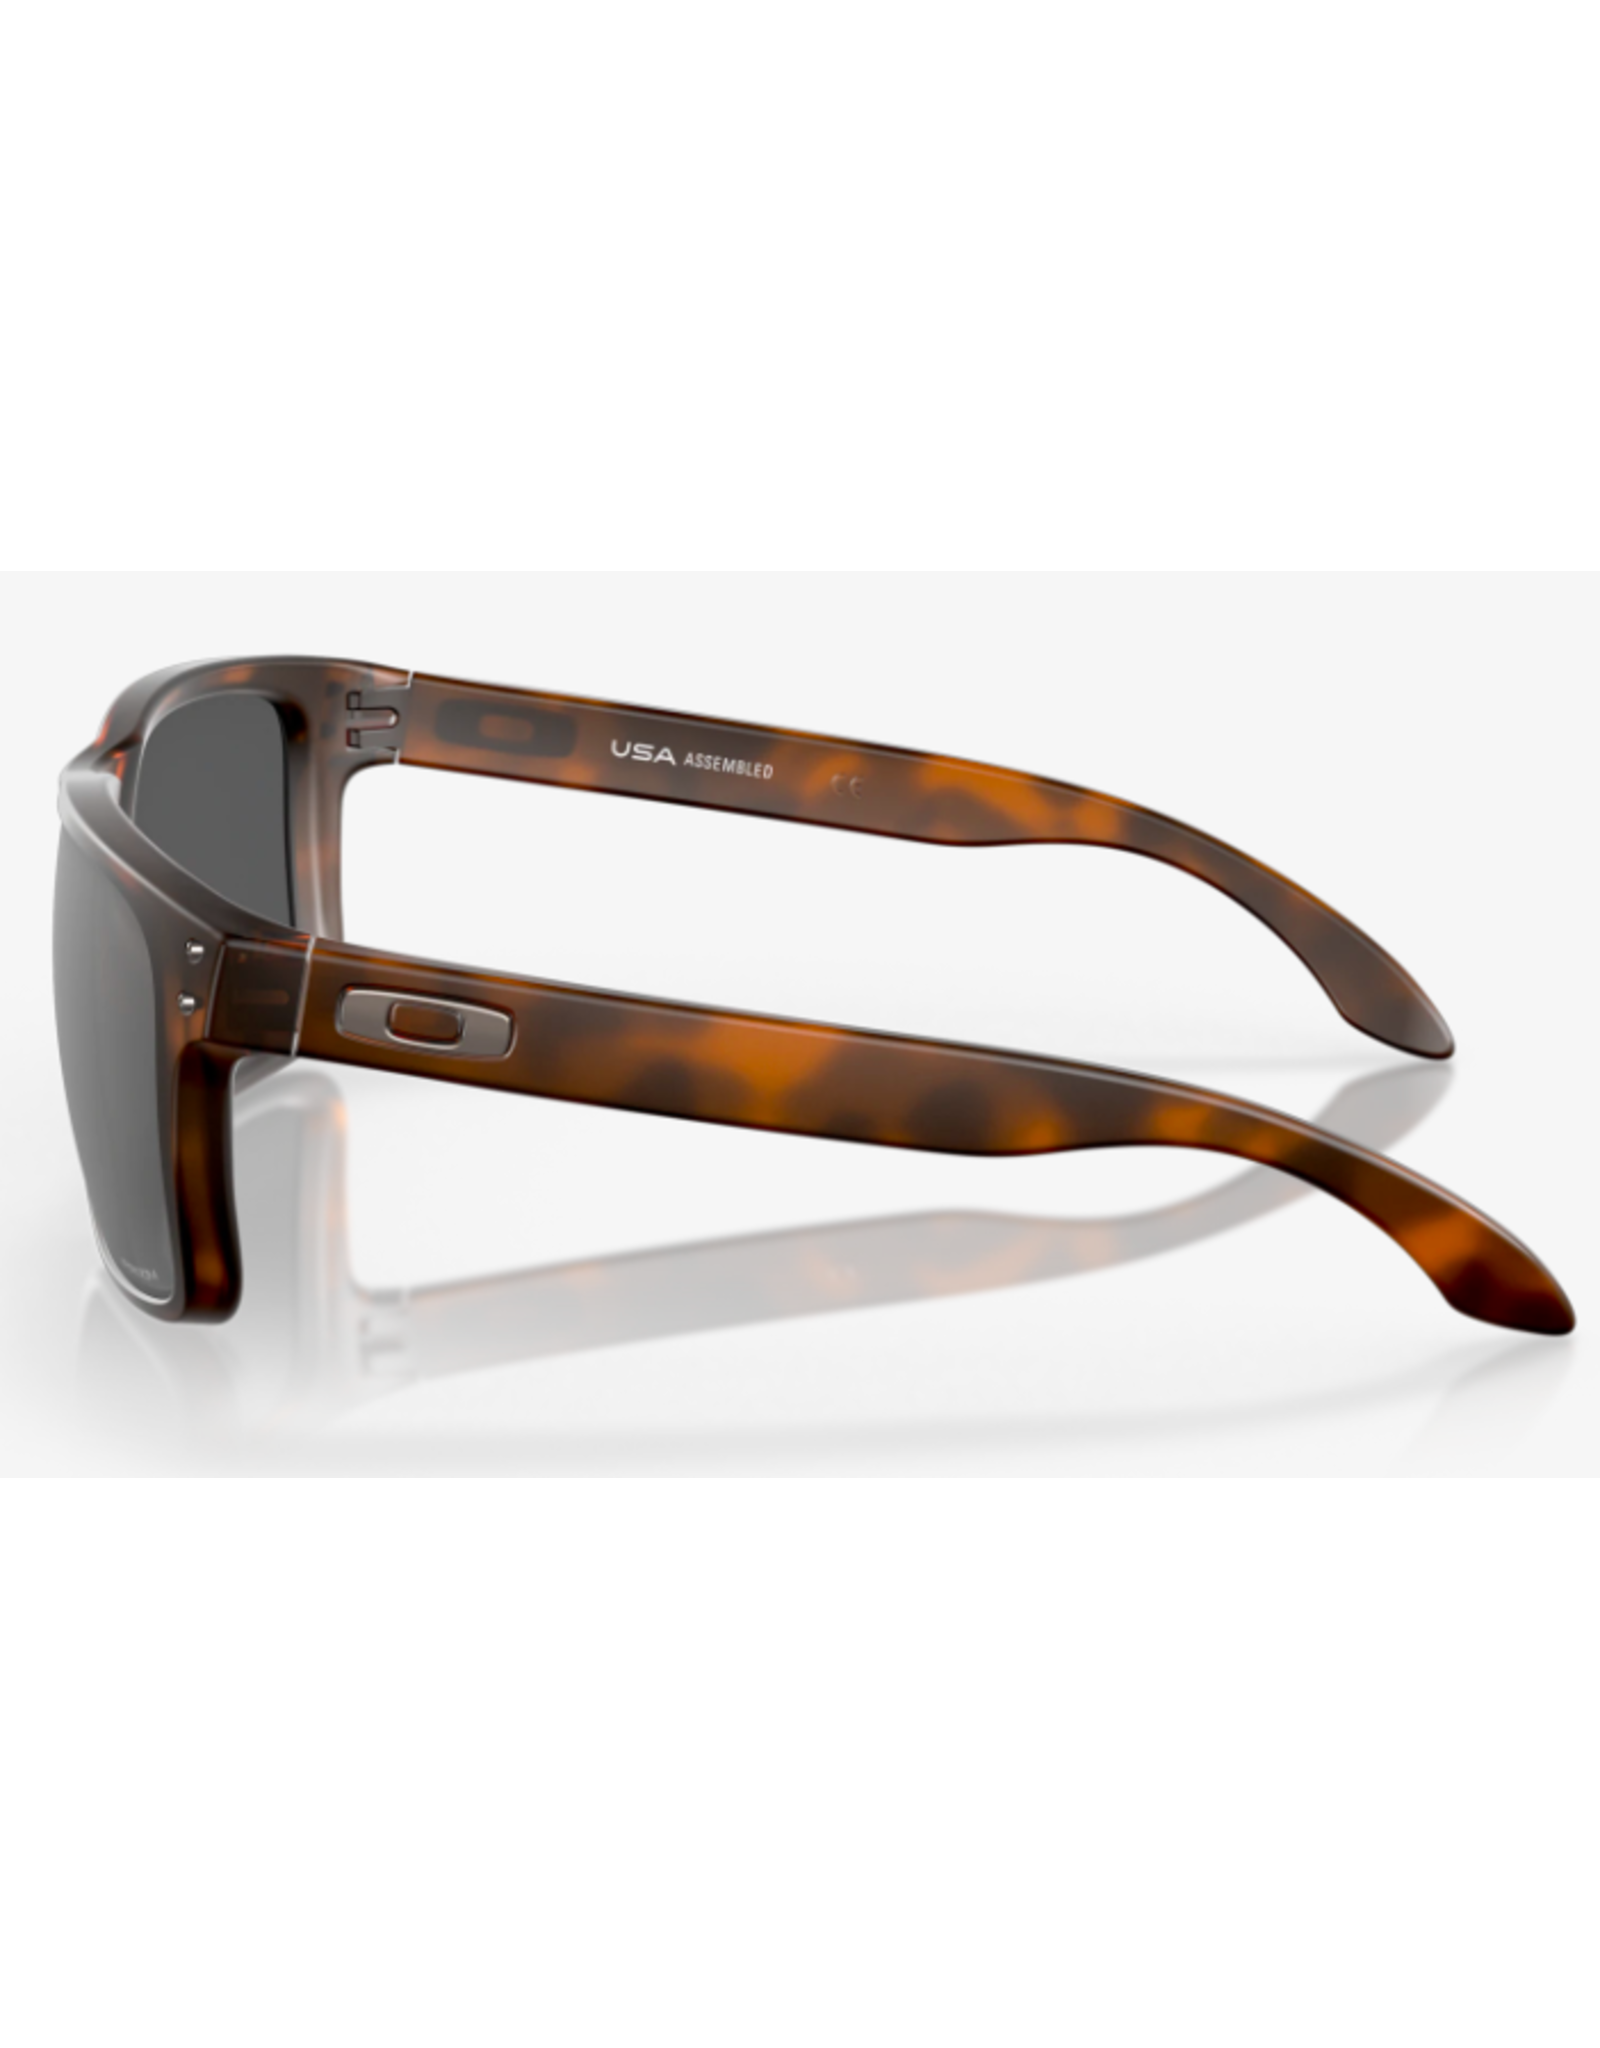 Oakley Holbrook XL Matte Brown Tortoise Frame with Prizm Black Lens Sunglasses